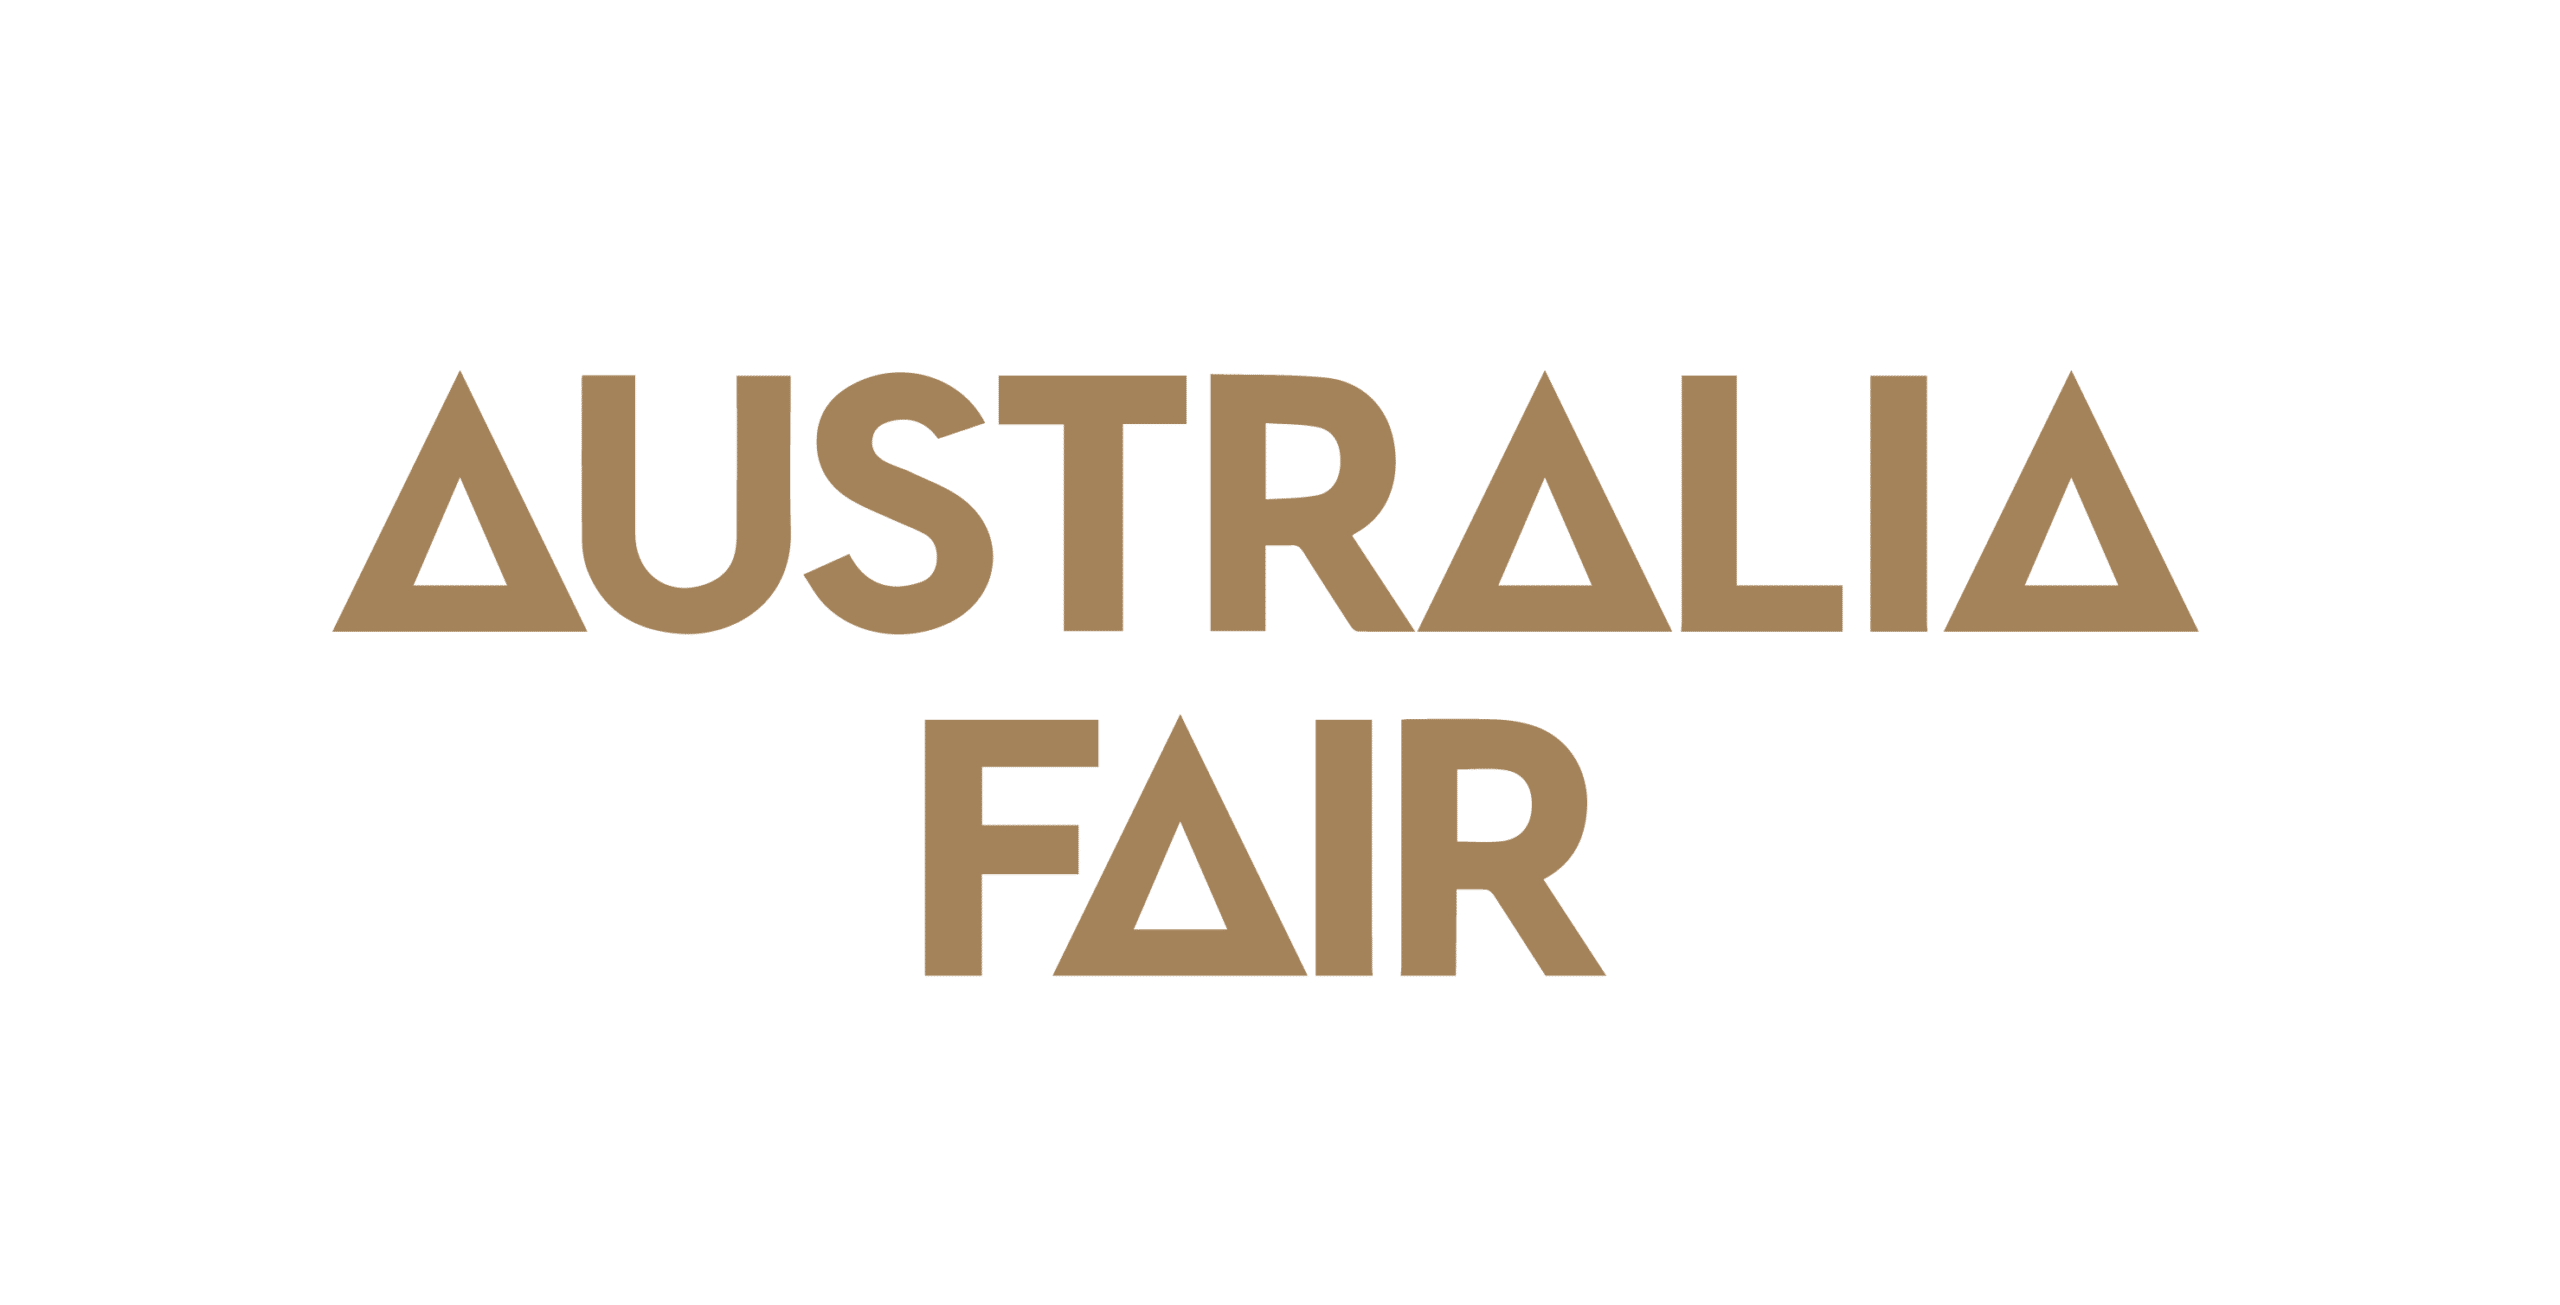 Australia Fair